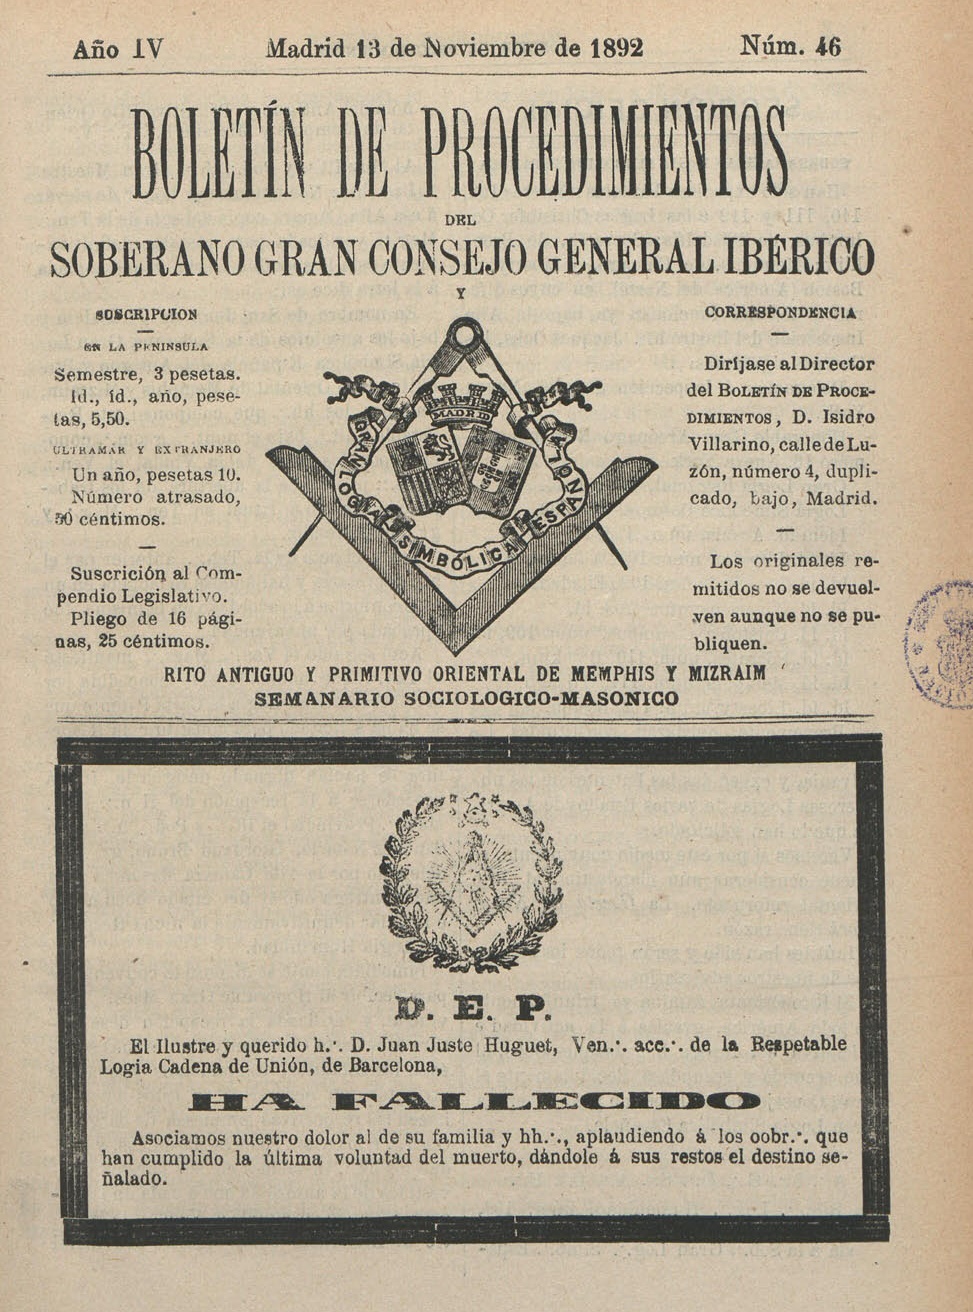 Esquela de Juan Justo Huguet (sic), venerable aceptado de la logia Cadena de Unión de Barcelona, publicada en el número 46 del ''Boletín de procedimientos del Soberano Gran Consejo General Ibérico'', 13 de noviembre de 1892.